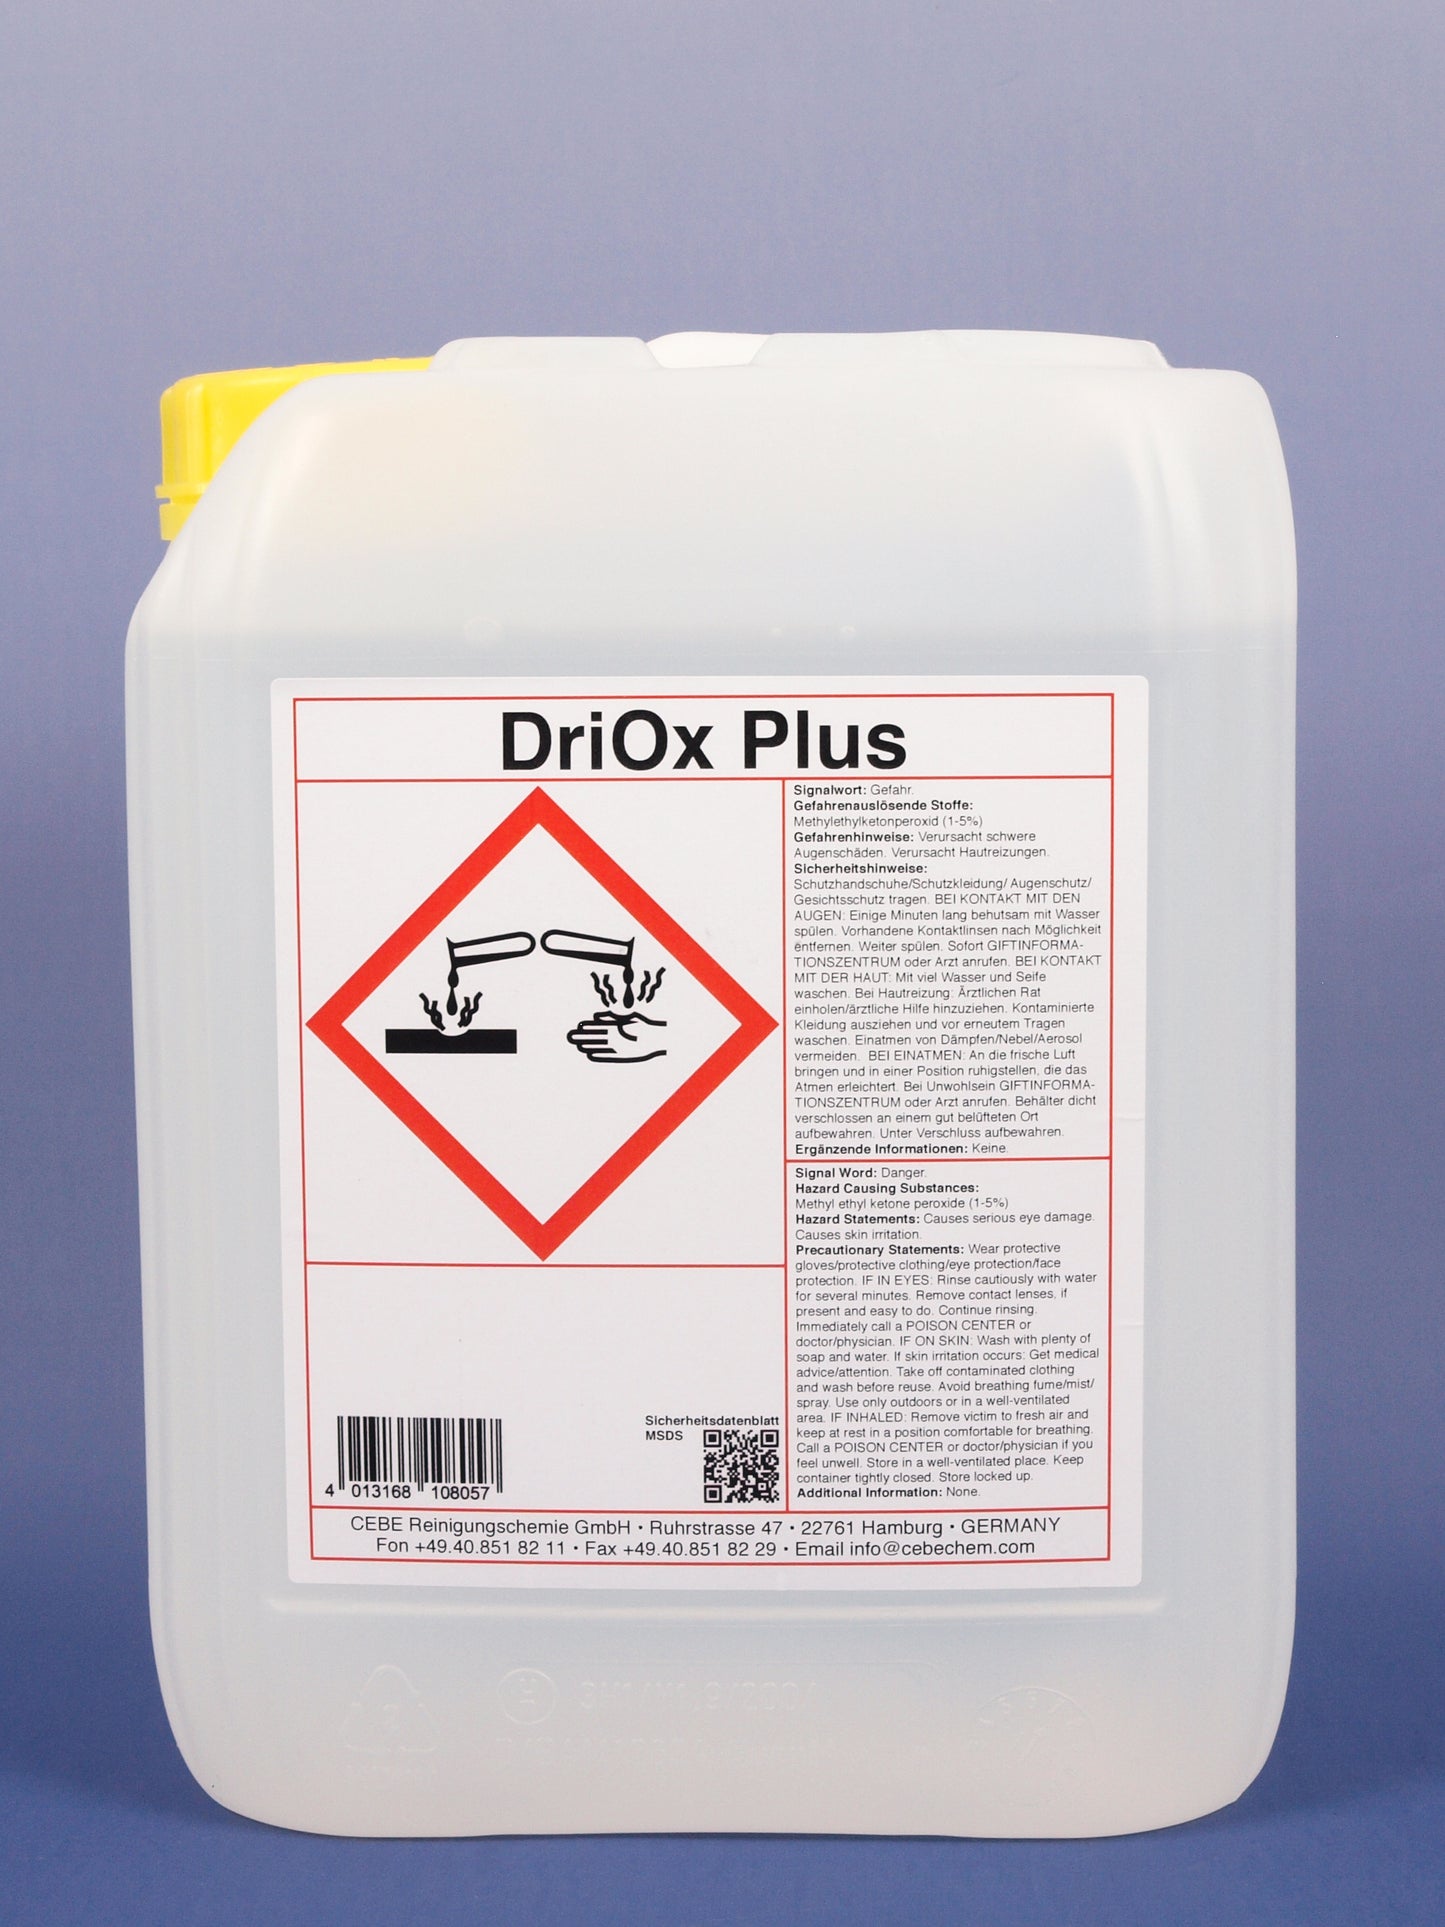 DriOx Plus